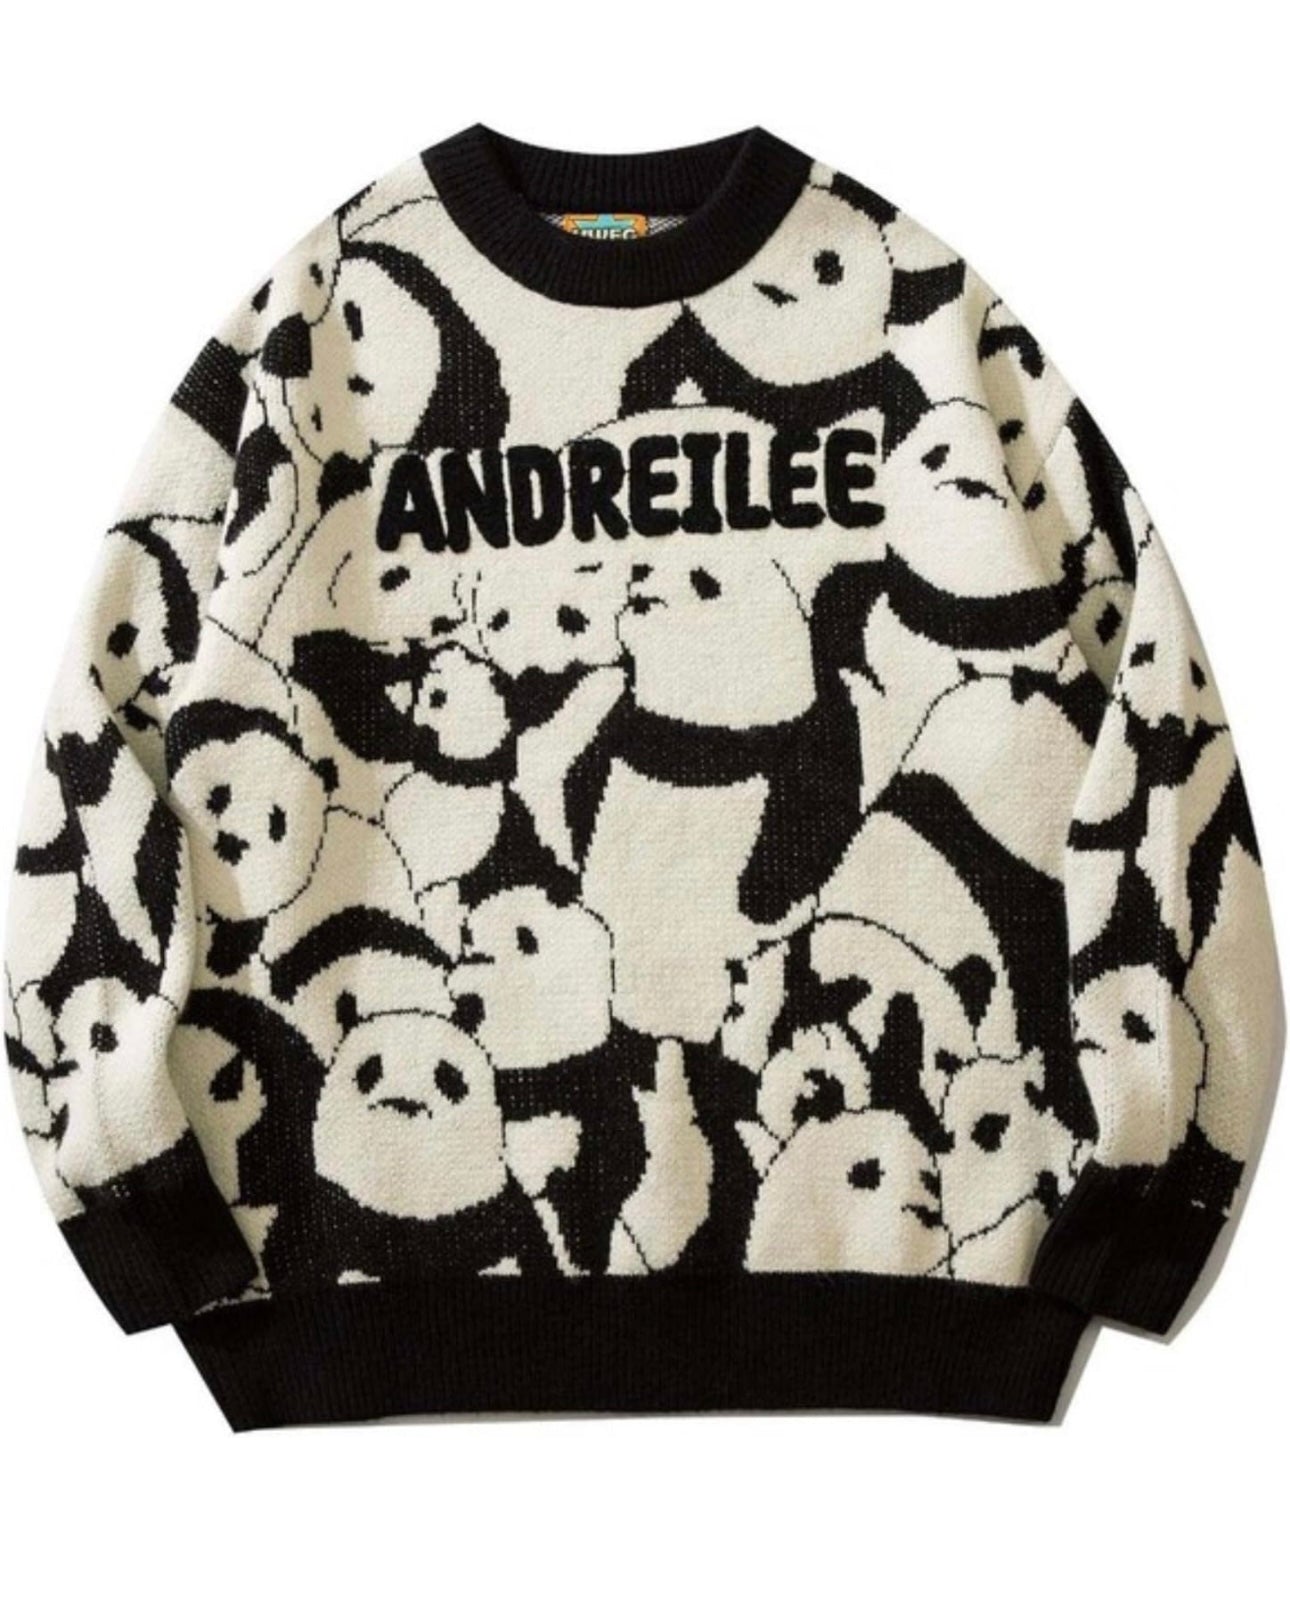 Panda Jacquard Knitted Sweater